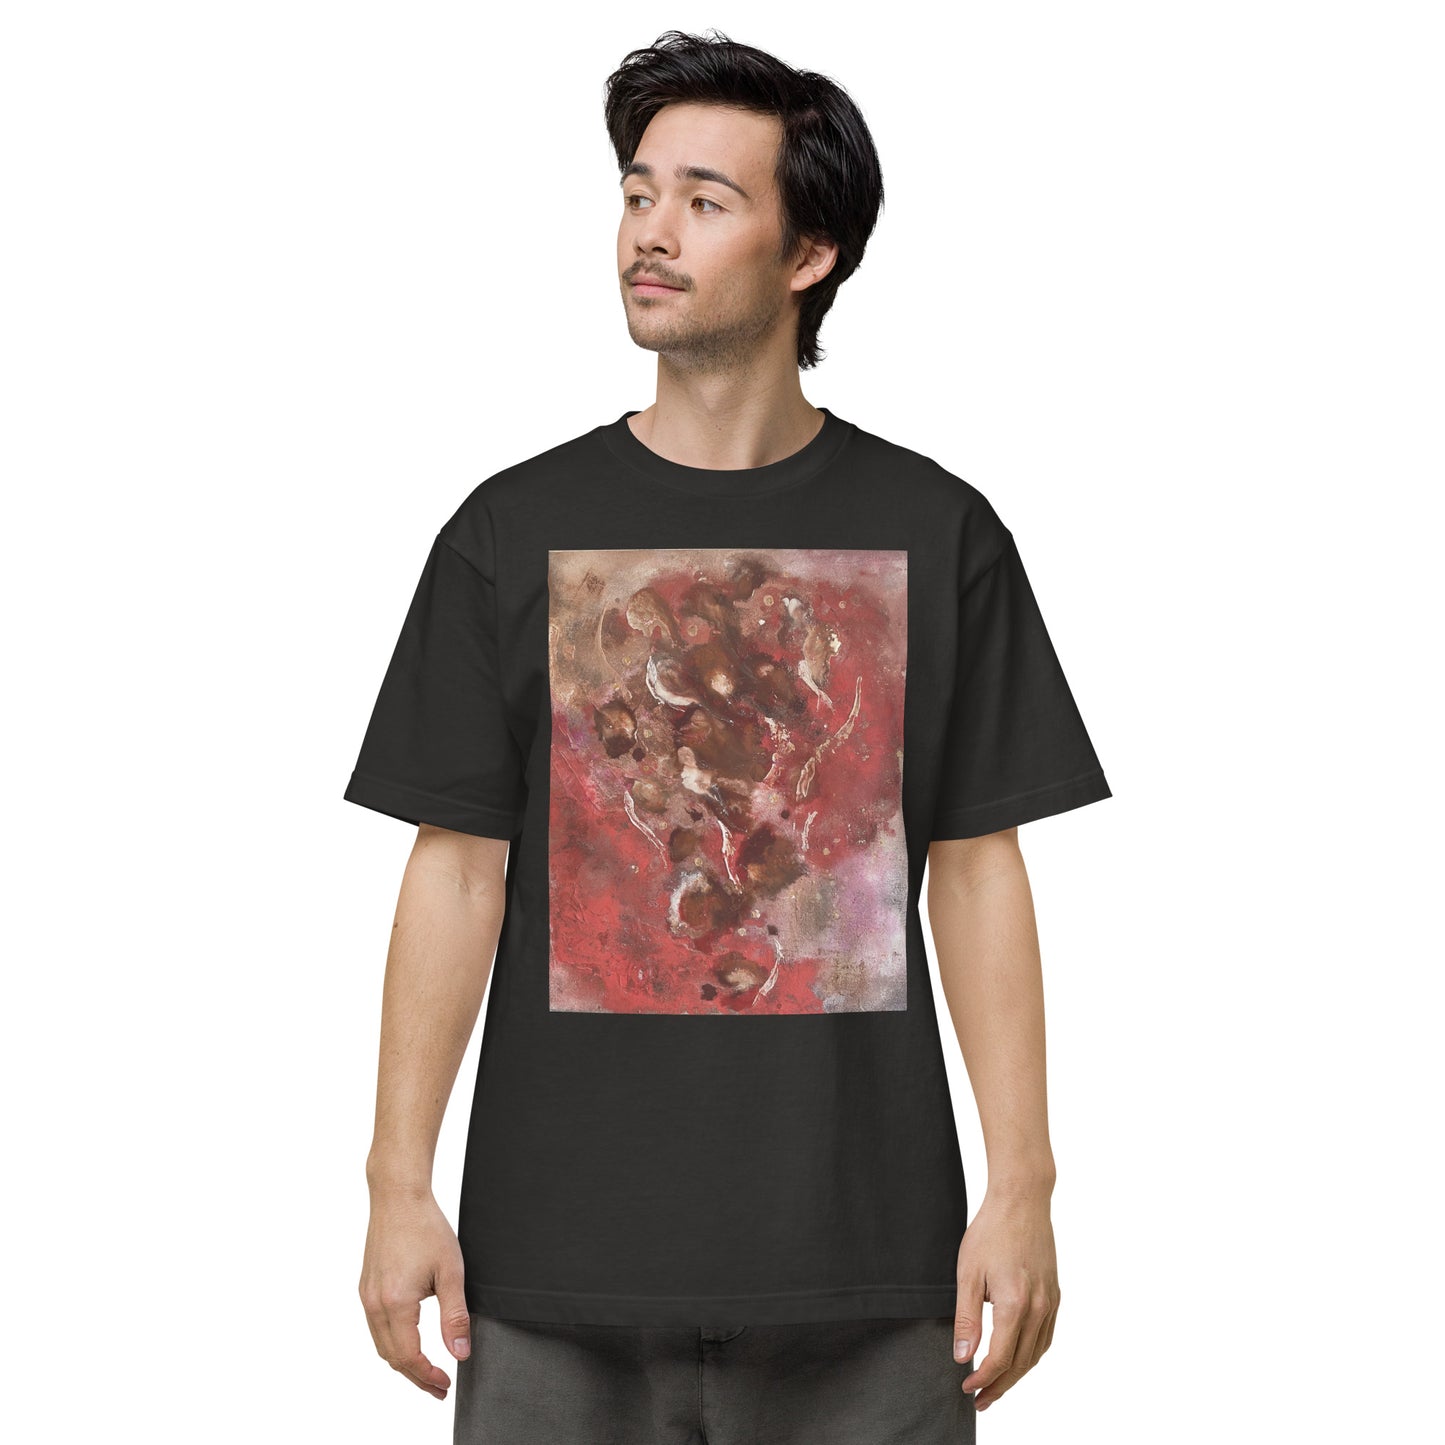 004_SOU_17 愛の燃え殻 前面プリント Tシャツ アートをデザイン